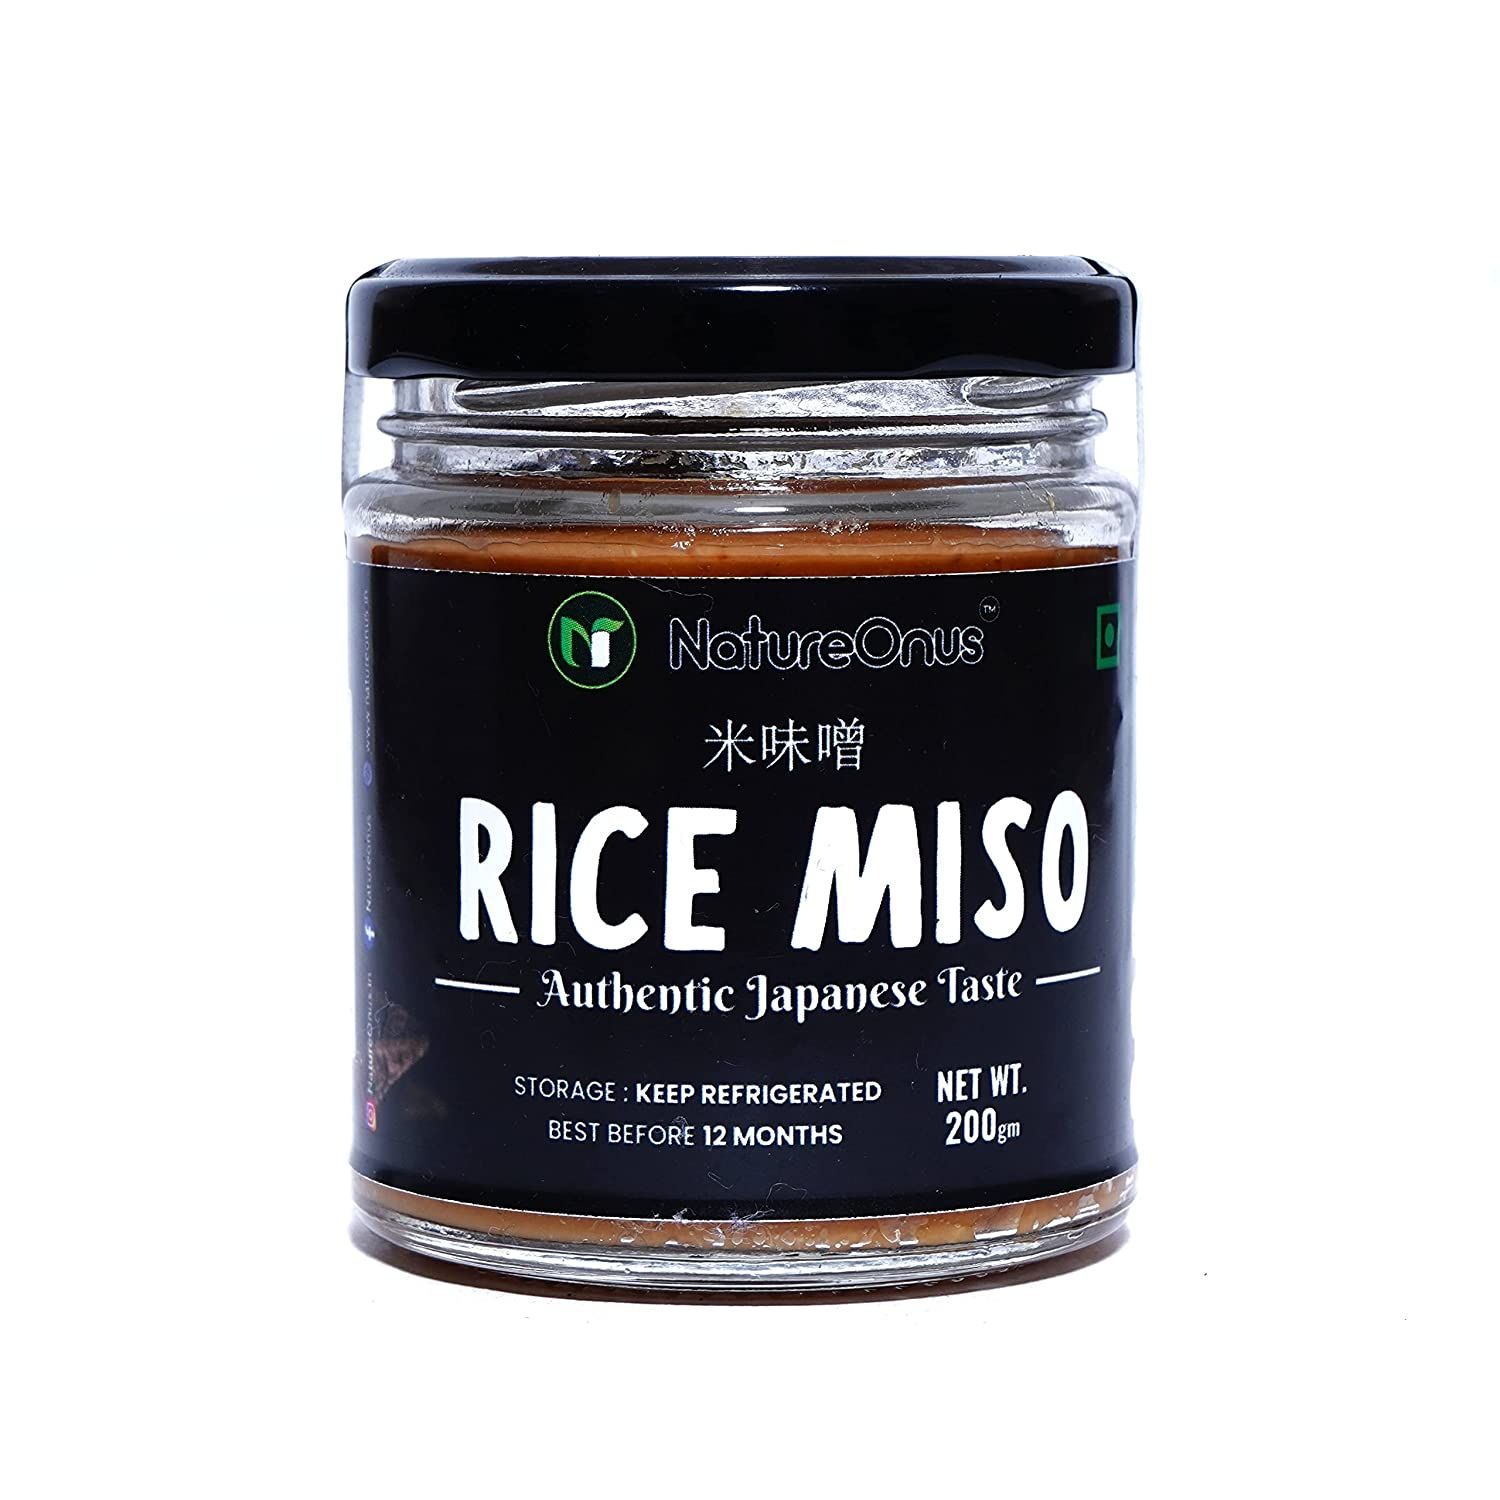 NatureOnus- Rice Miso Image